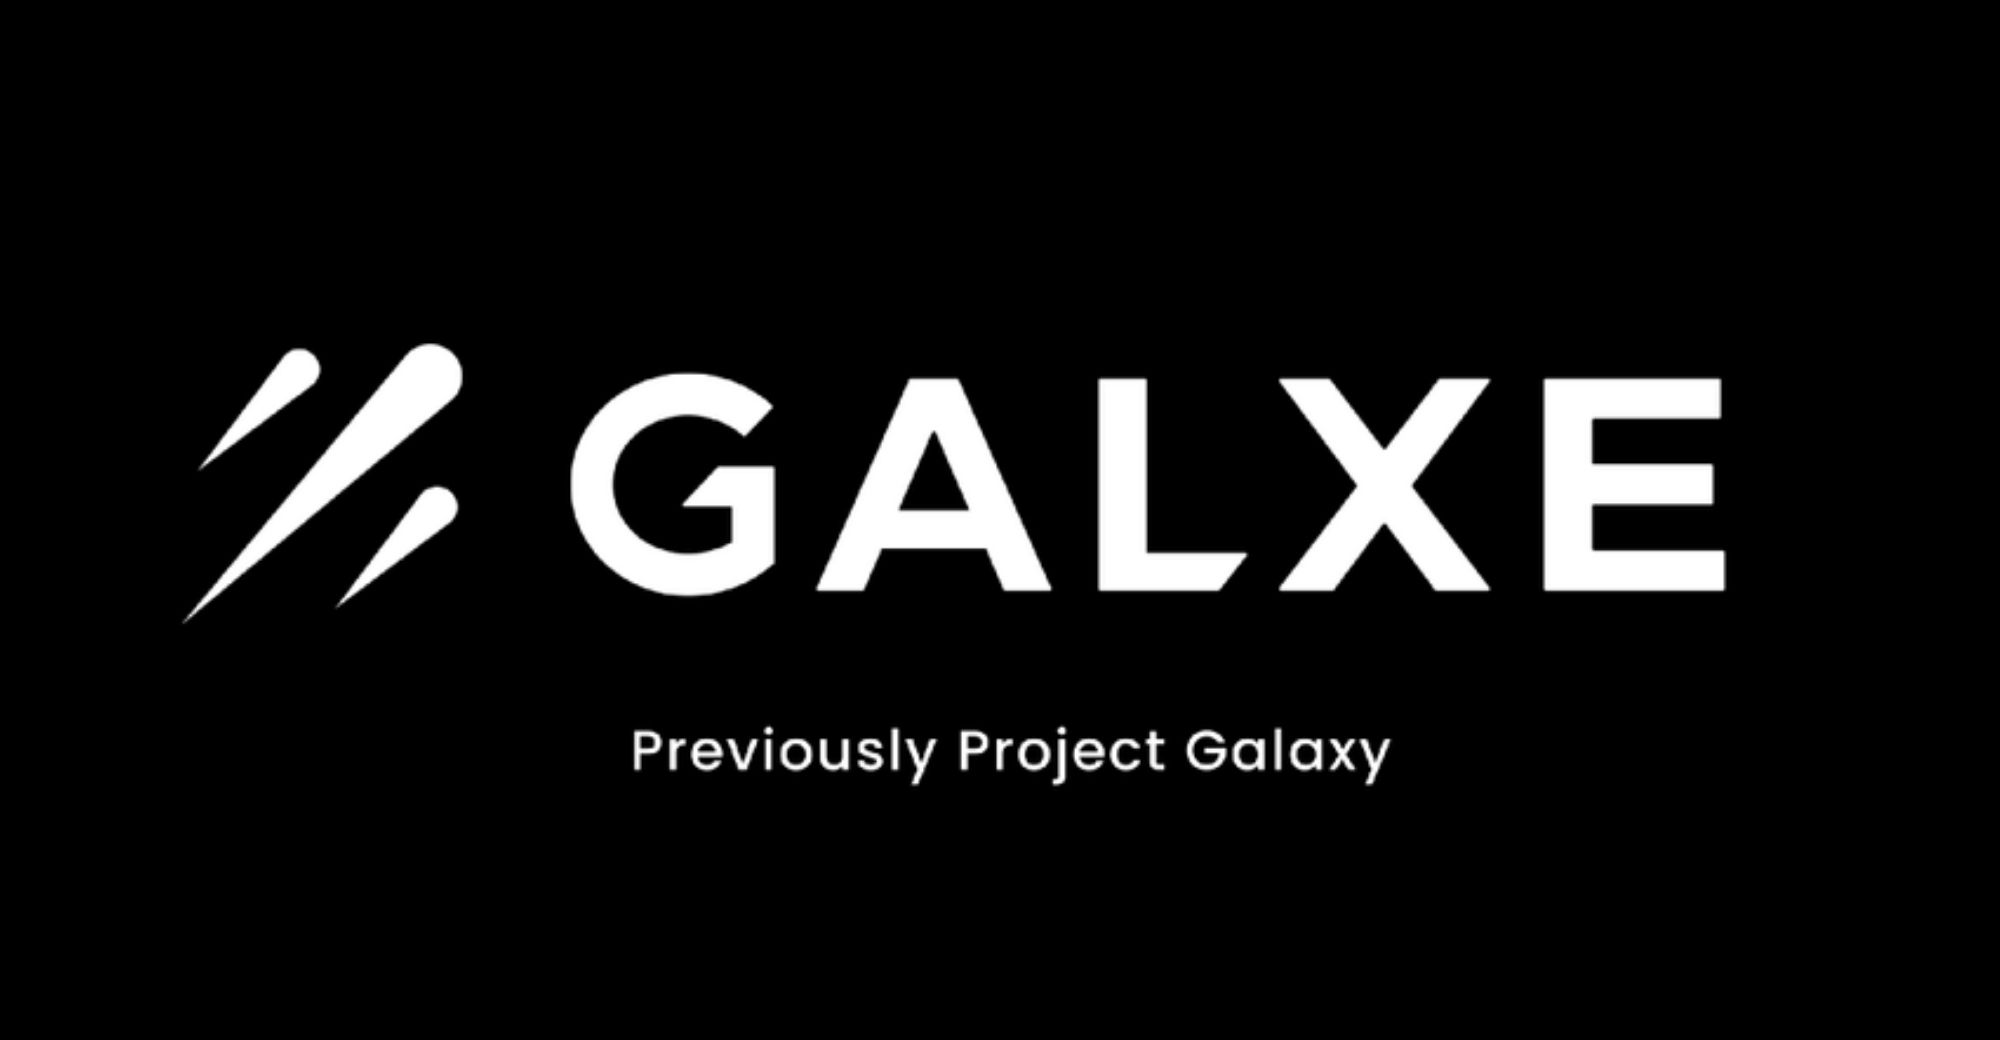 Projek Galaxy dinamakan semula sebagai Galxe, berkembang menjadi ekosistem